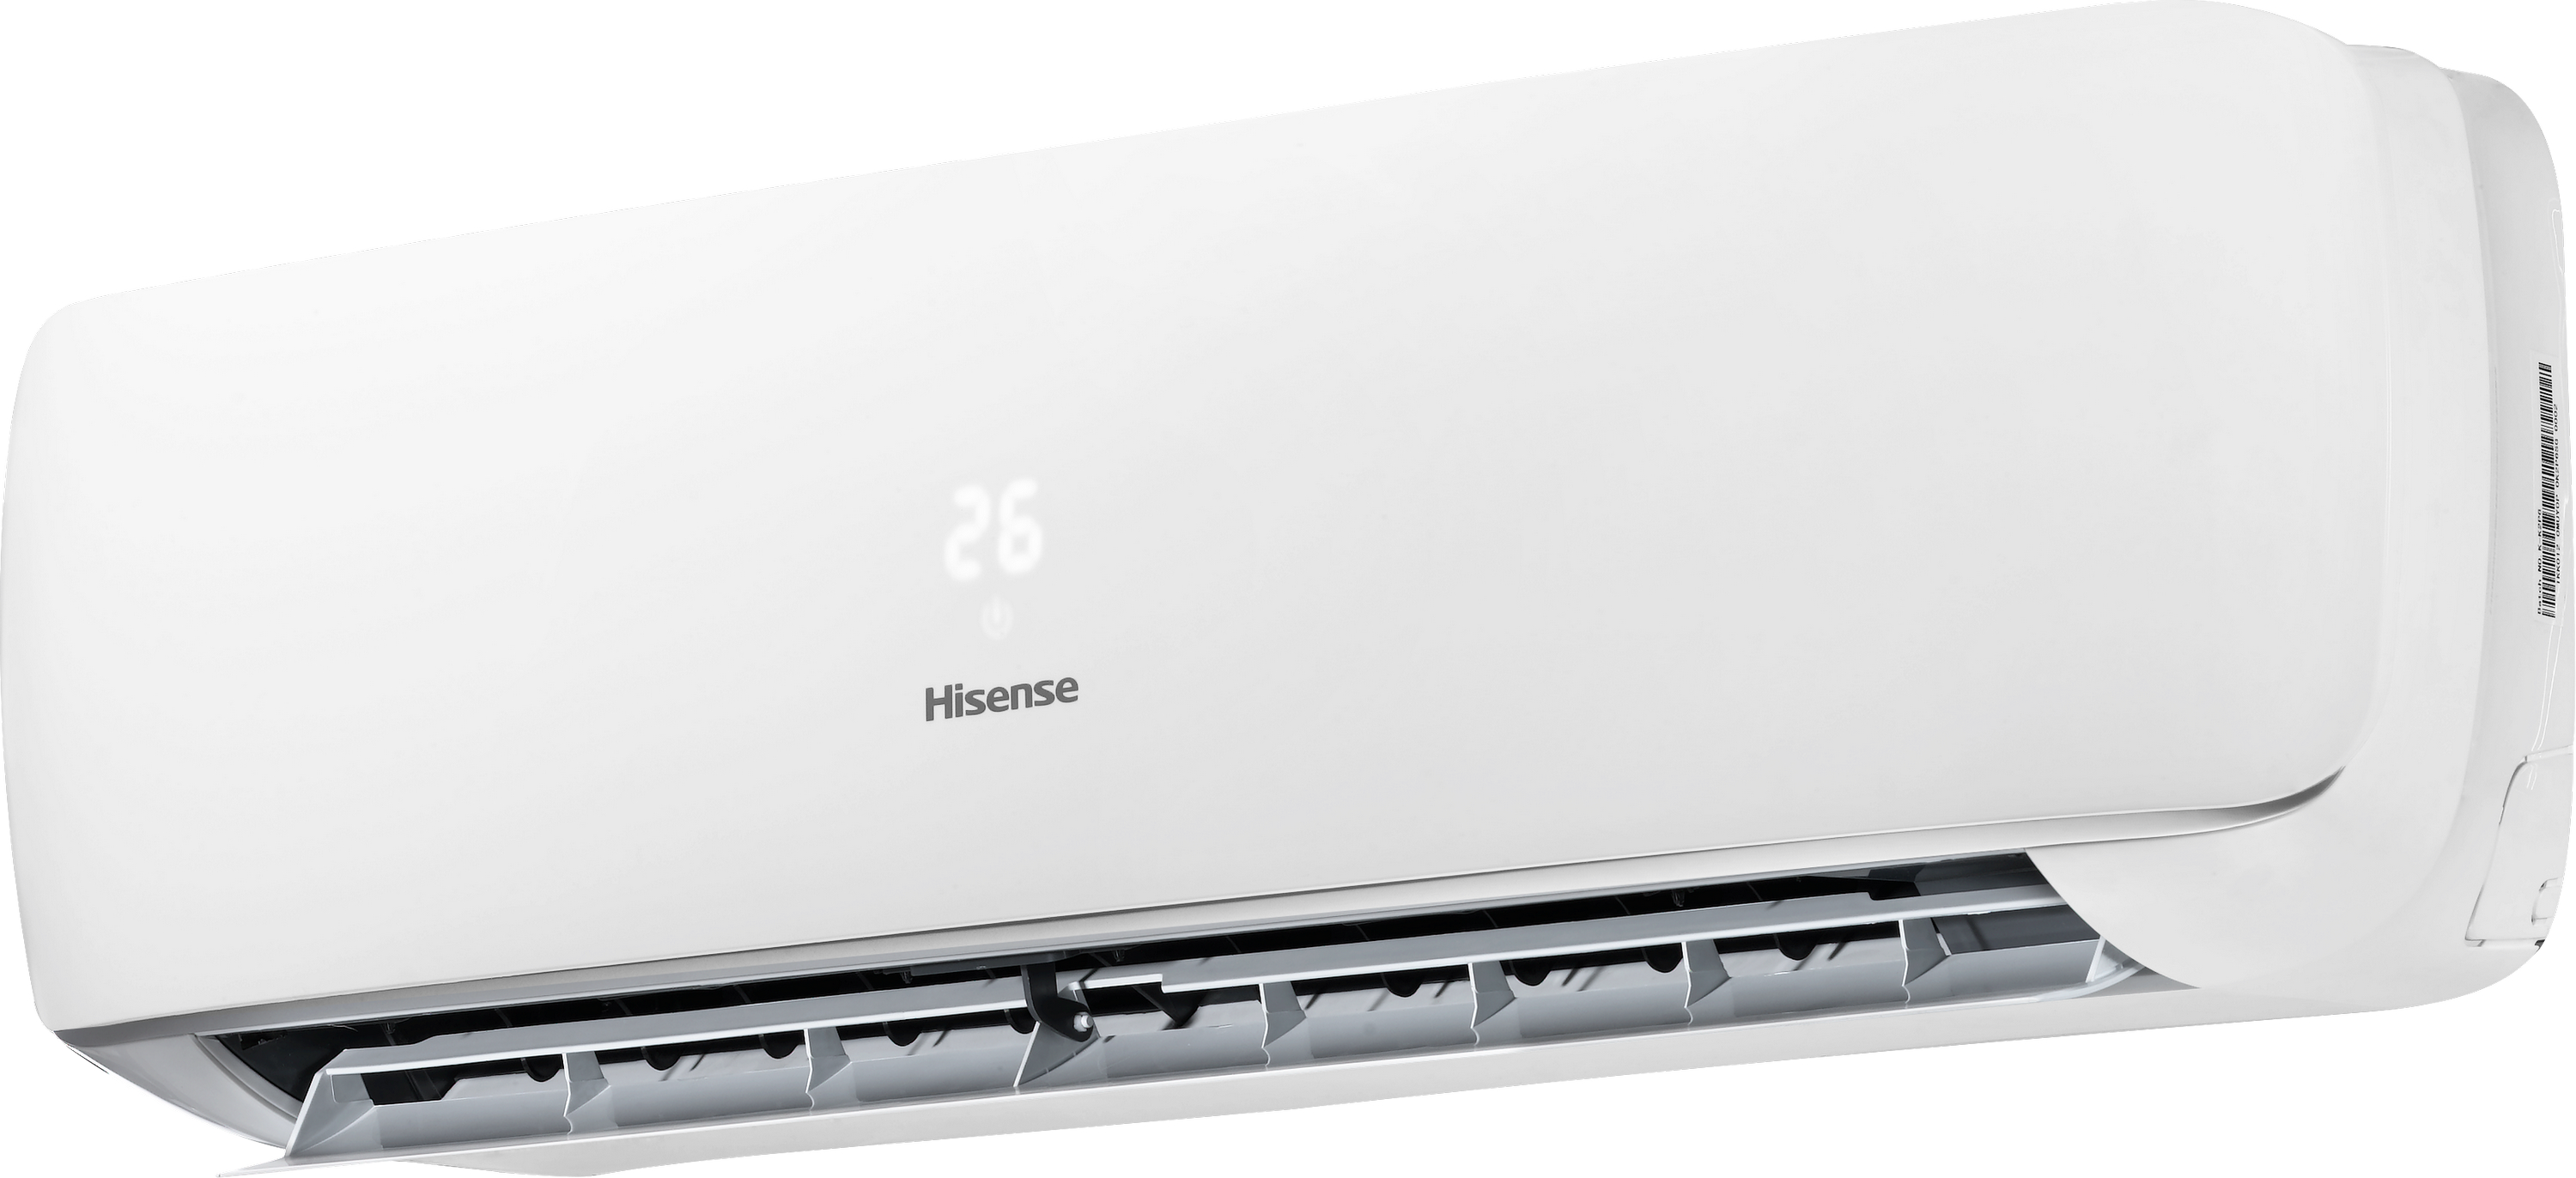 Кондиционер сплит-система Hisense Apple Pie R32 TG35VE0A отзывы - изображения 5